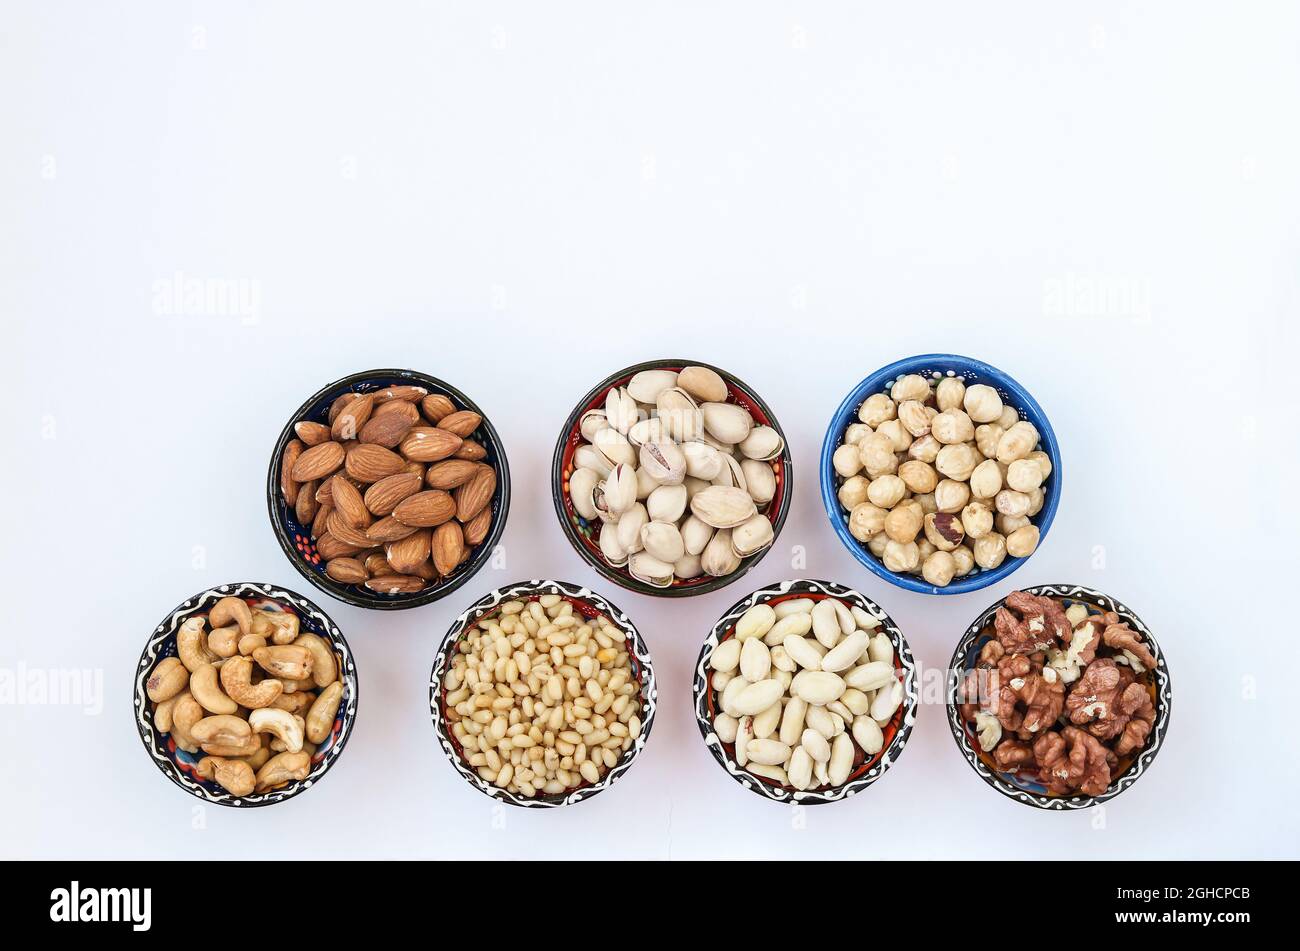 Verschiedene Arten von Nüssen: Erdnüsse, Pinienkerne, Cashewkerne, Mandeln, Haselnüsse, Walnüsse und Pistazien auf weißem Hintergrund. Draufsicht. Speicherplatz kopieren Stockfoto